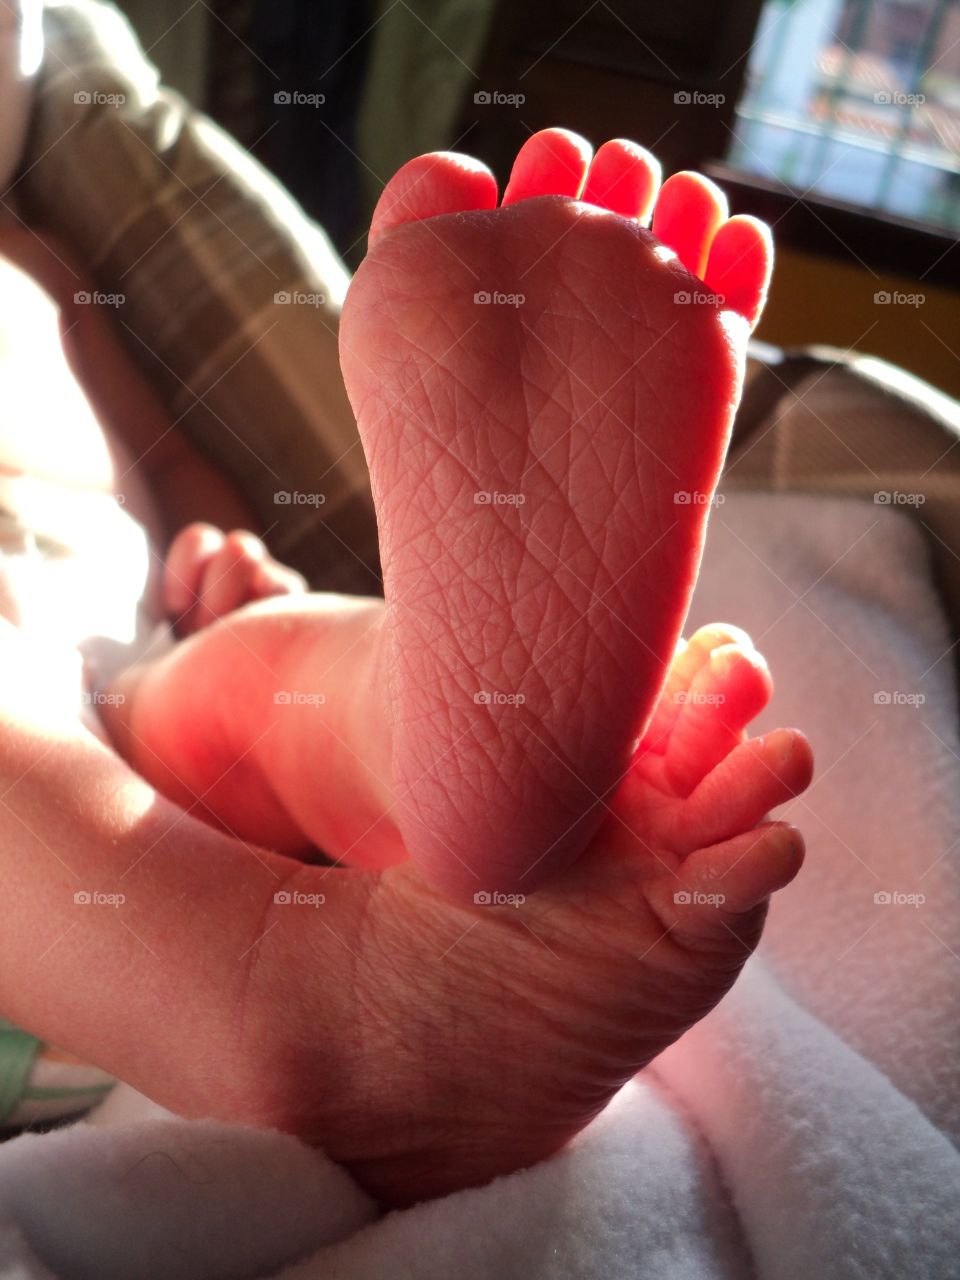 my newborn baby's feet